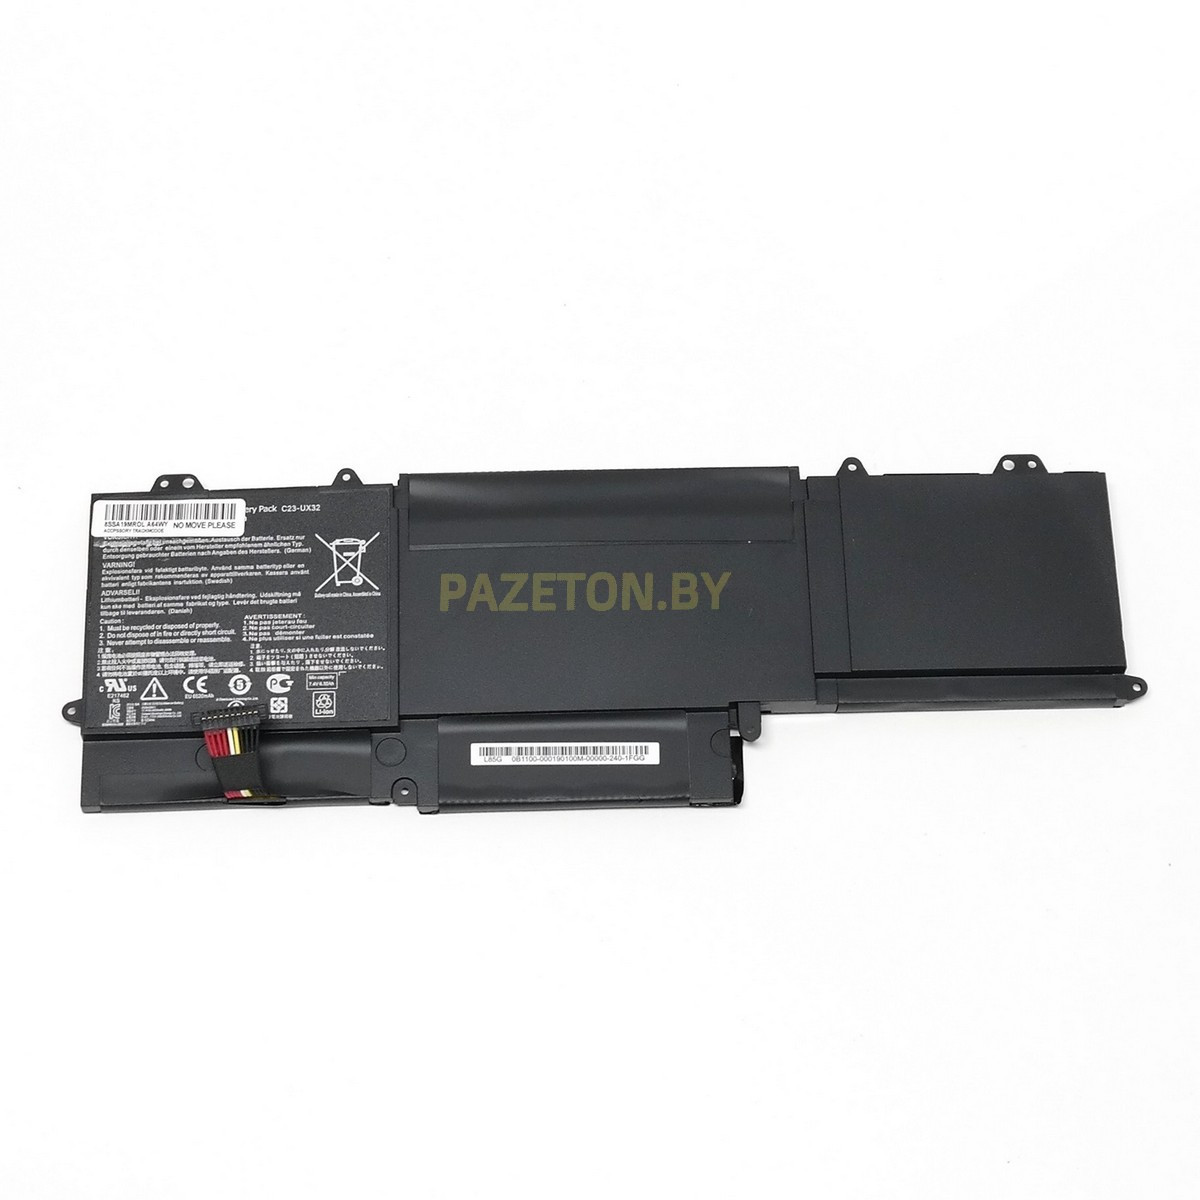 Батарея C23-UX32 7,4V 6520mAh для Asus Zenbook UX32A UX32VD и других моделей ноутбуков, фото 1